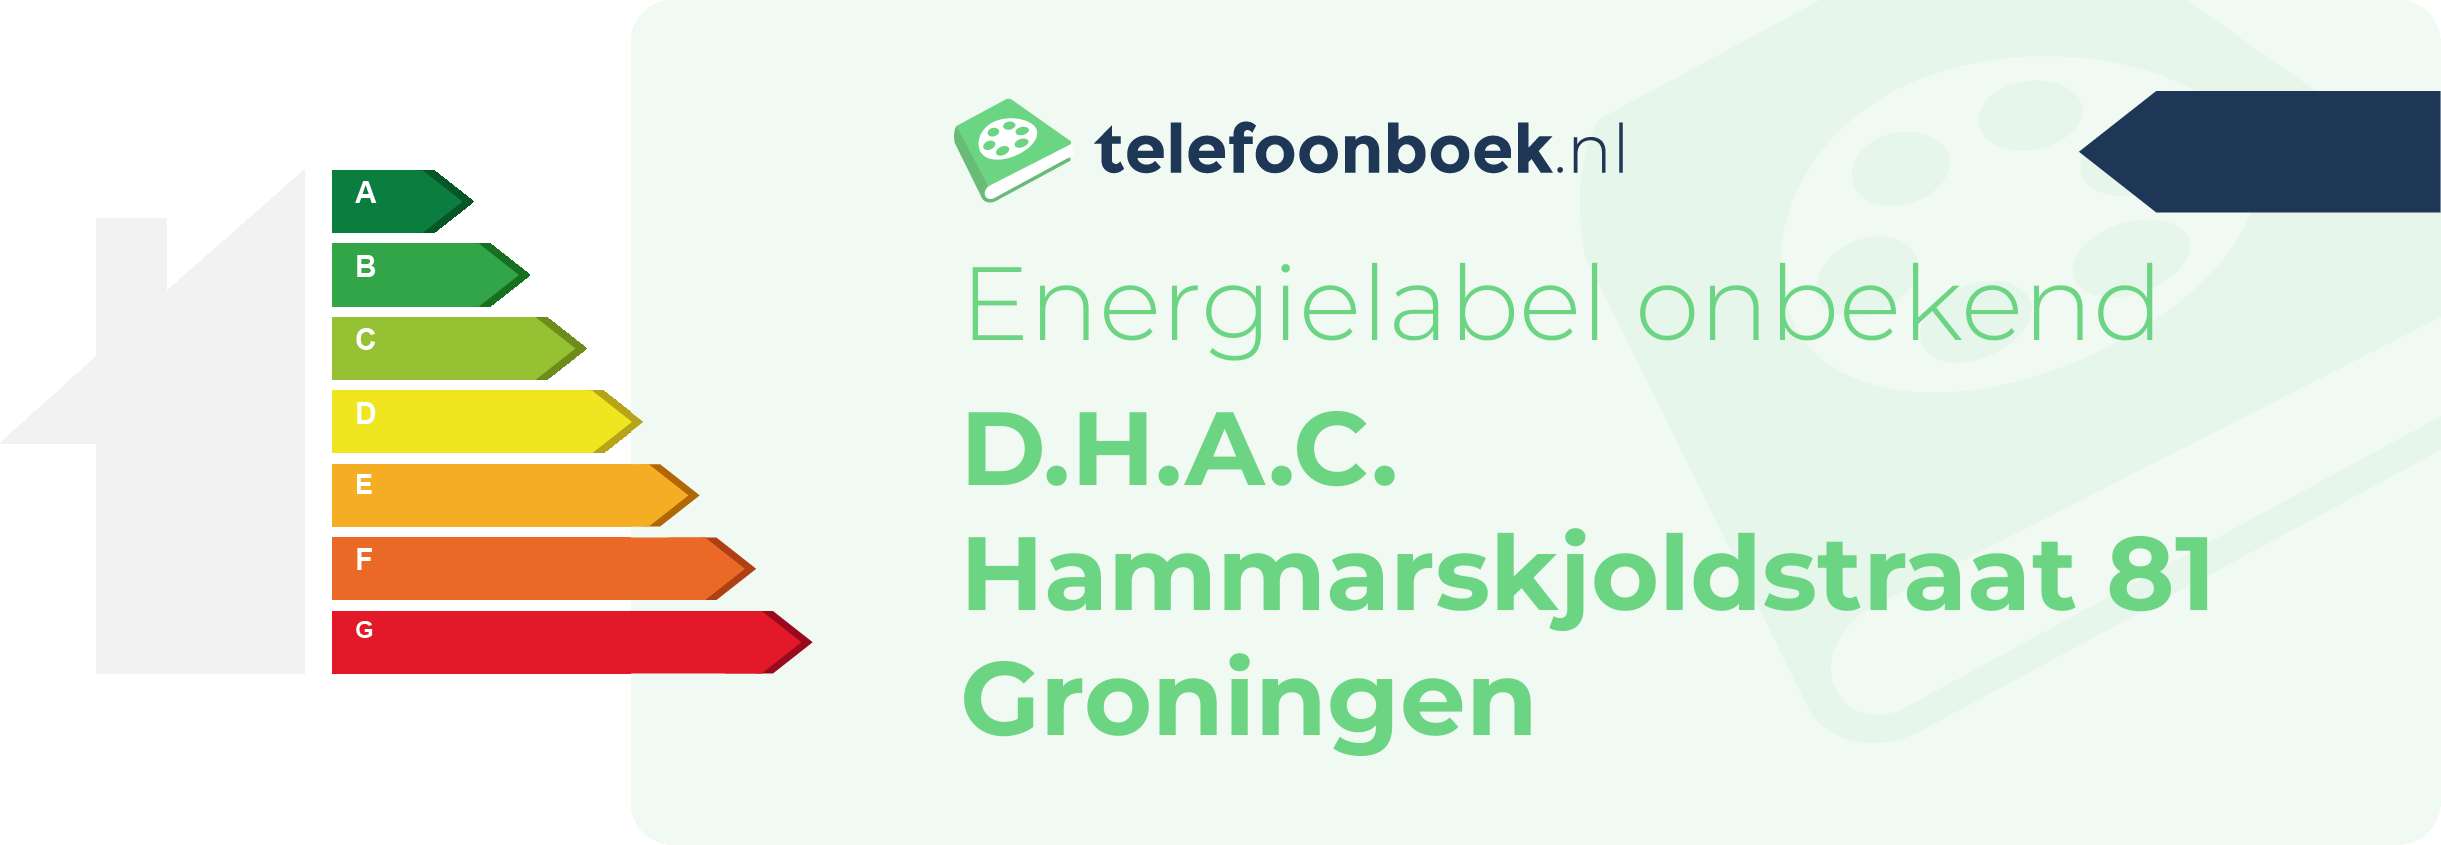 Energielabel D.H.A.C. Hammarskjoldstraat 81 Groningen